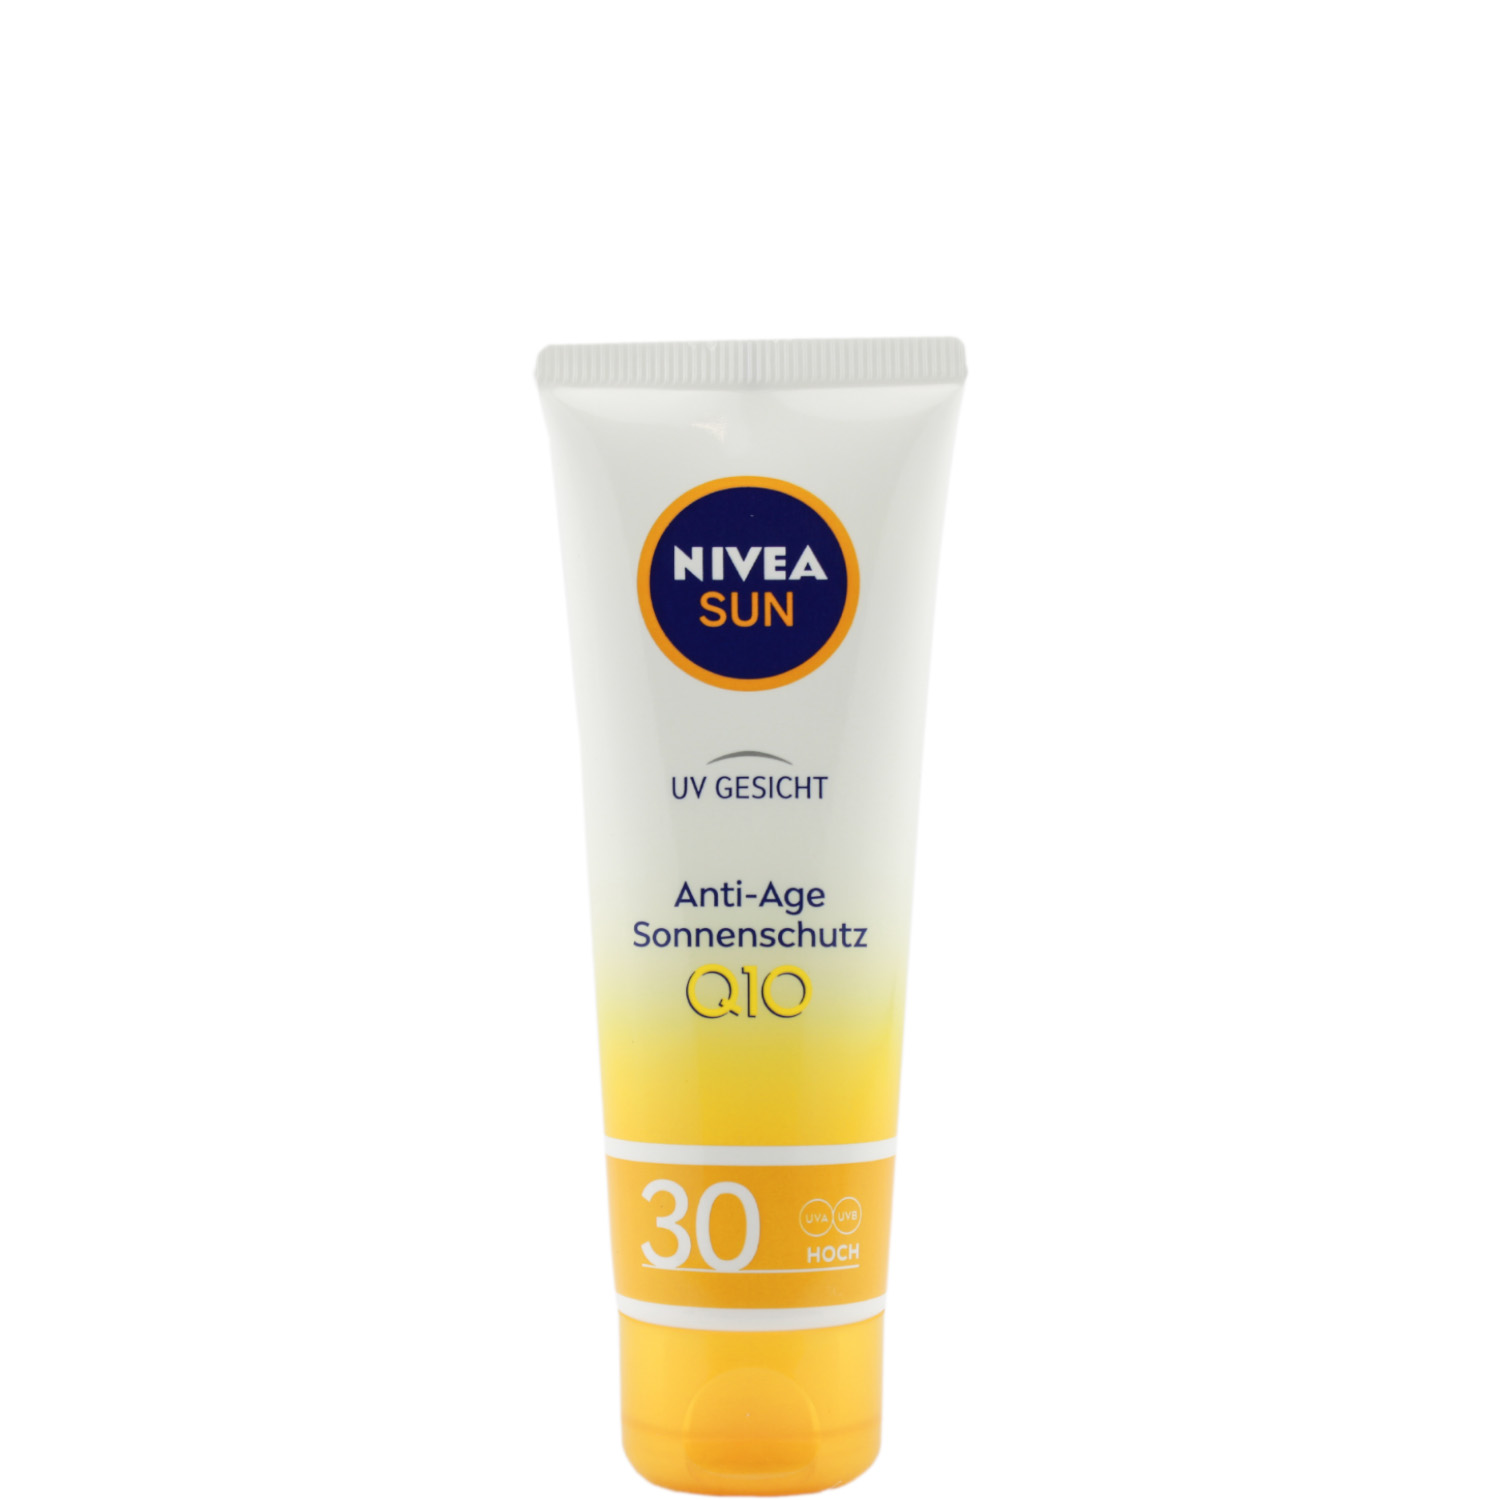 Nivea Sun UV Gesicht  Anti-Age Sonnenschutz Q10 mit LSF30 50ml